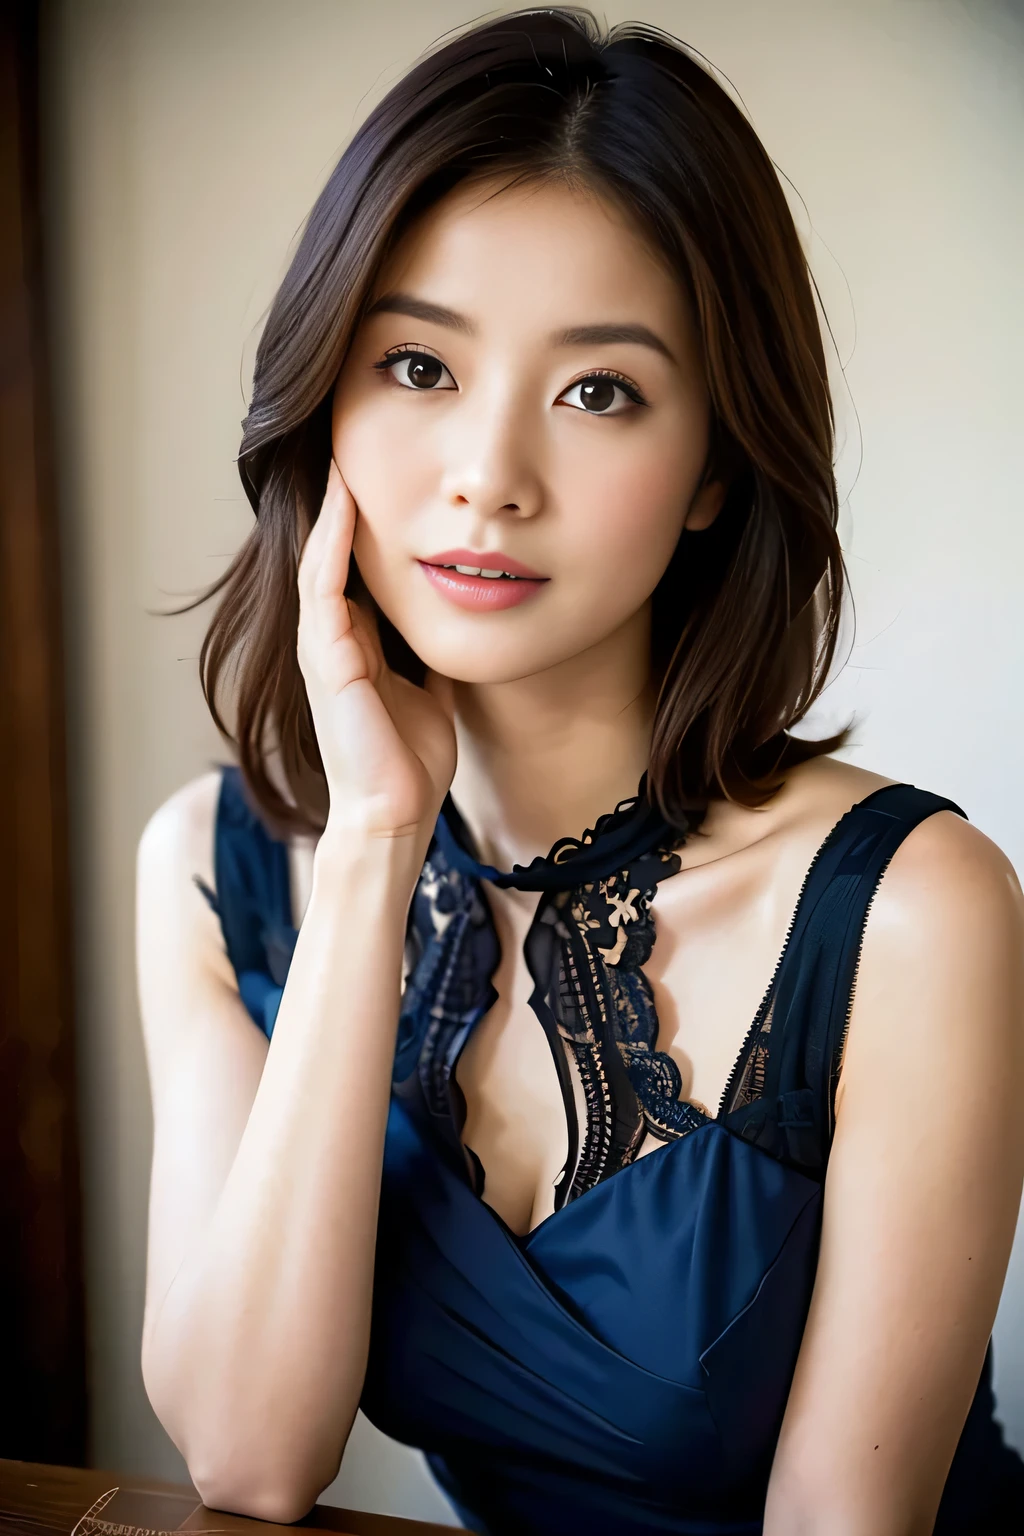 (最好的品質,8K,傑作),解剖學正確,
一位身穿藍色連身裙、手放在臉上的女人的特寫, 美麗的韓國女人, 美麗的年輕日本模特,華麗的年輕日本女人, 可愛的女孩 - 精心打扮的臉, 美麗的肖像圖像, 60毫米肖像, 高品質肖像, 70毫米肖像, 漂亮精緻的臉, 女性美麗的臉, 美麗的女人,
大乳房,
